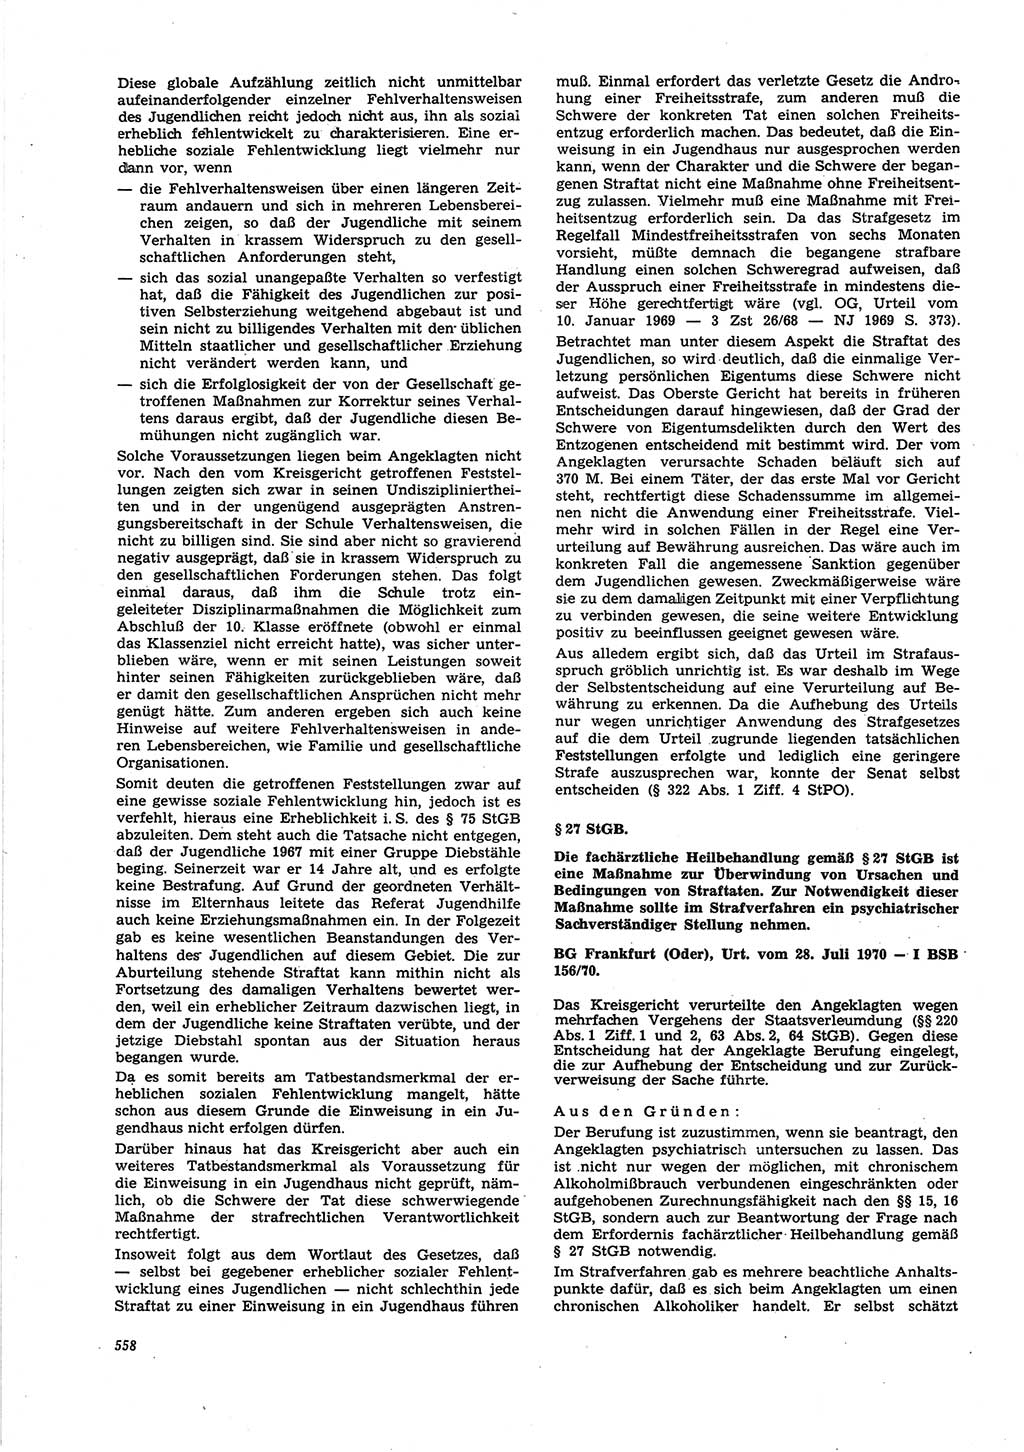 Neue Justiz (NJ), Zeitschrift für Recht und Rechtswissenschaft [Deutsche Demokratische Republik (DDR)], 25. Jahrgang 1971, Seite 558 (NJ DDR 1971, S. 558)